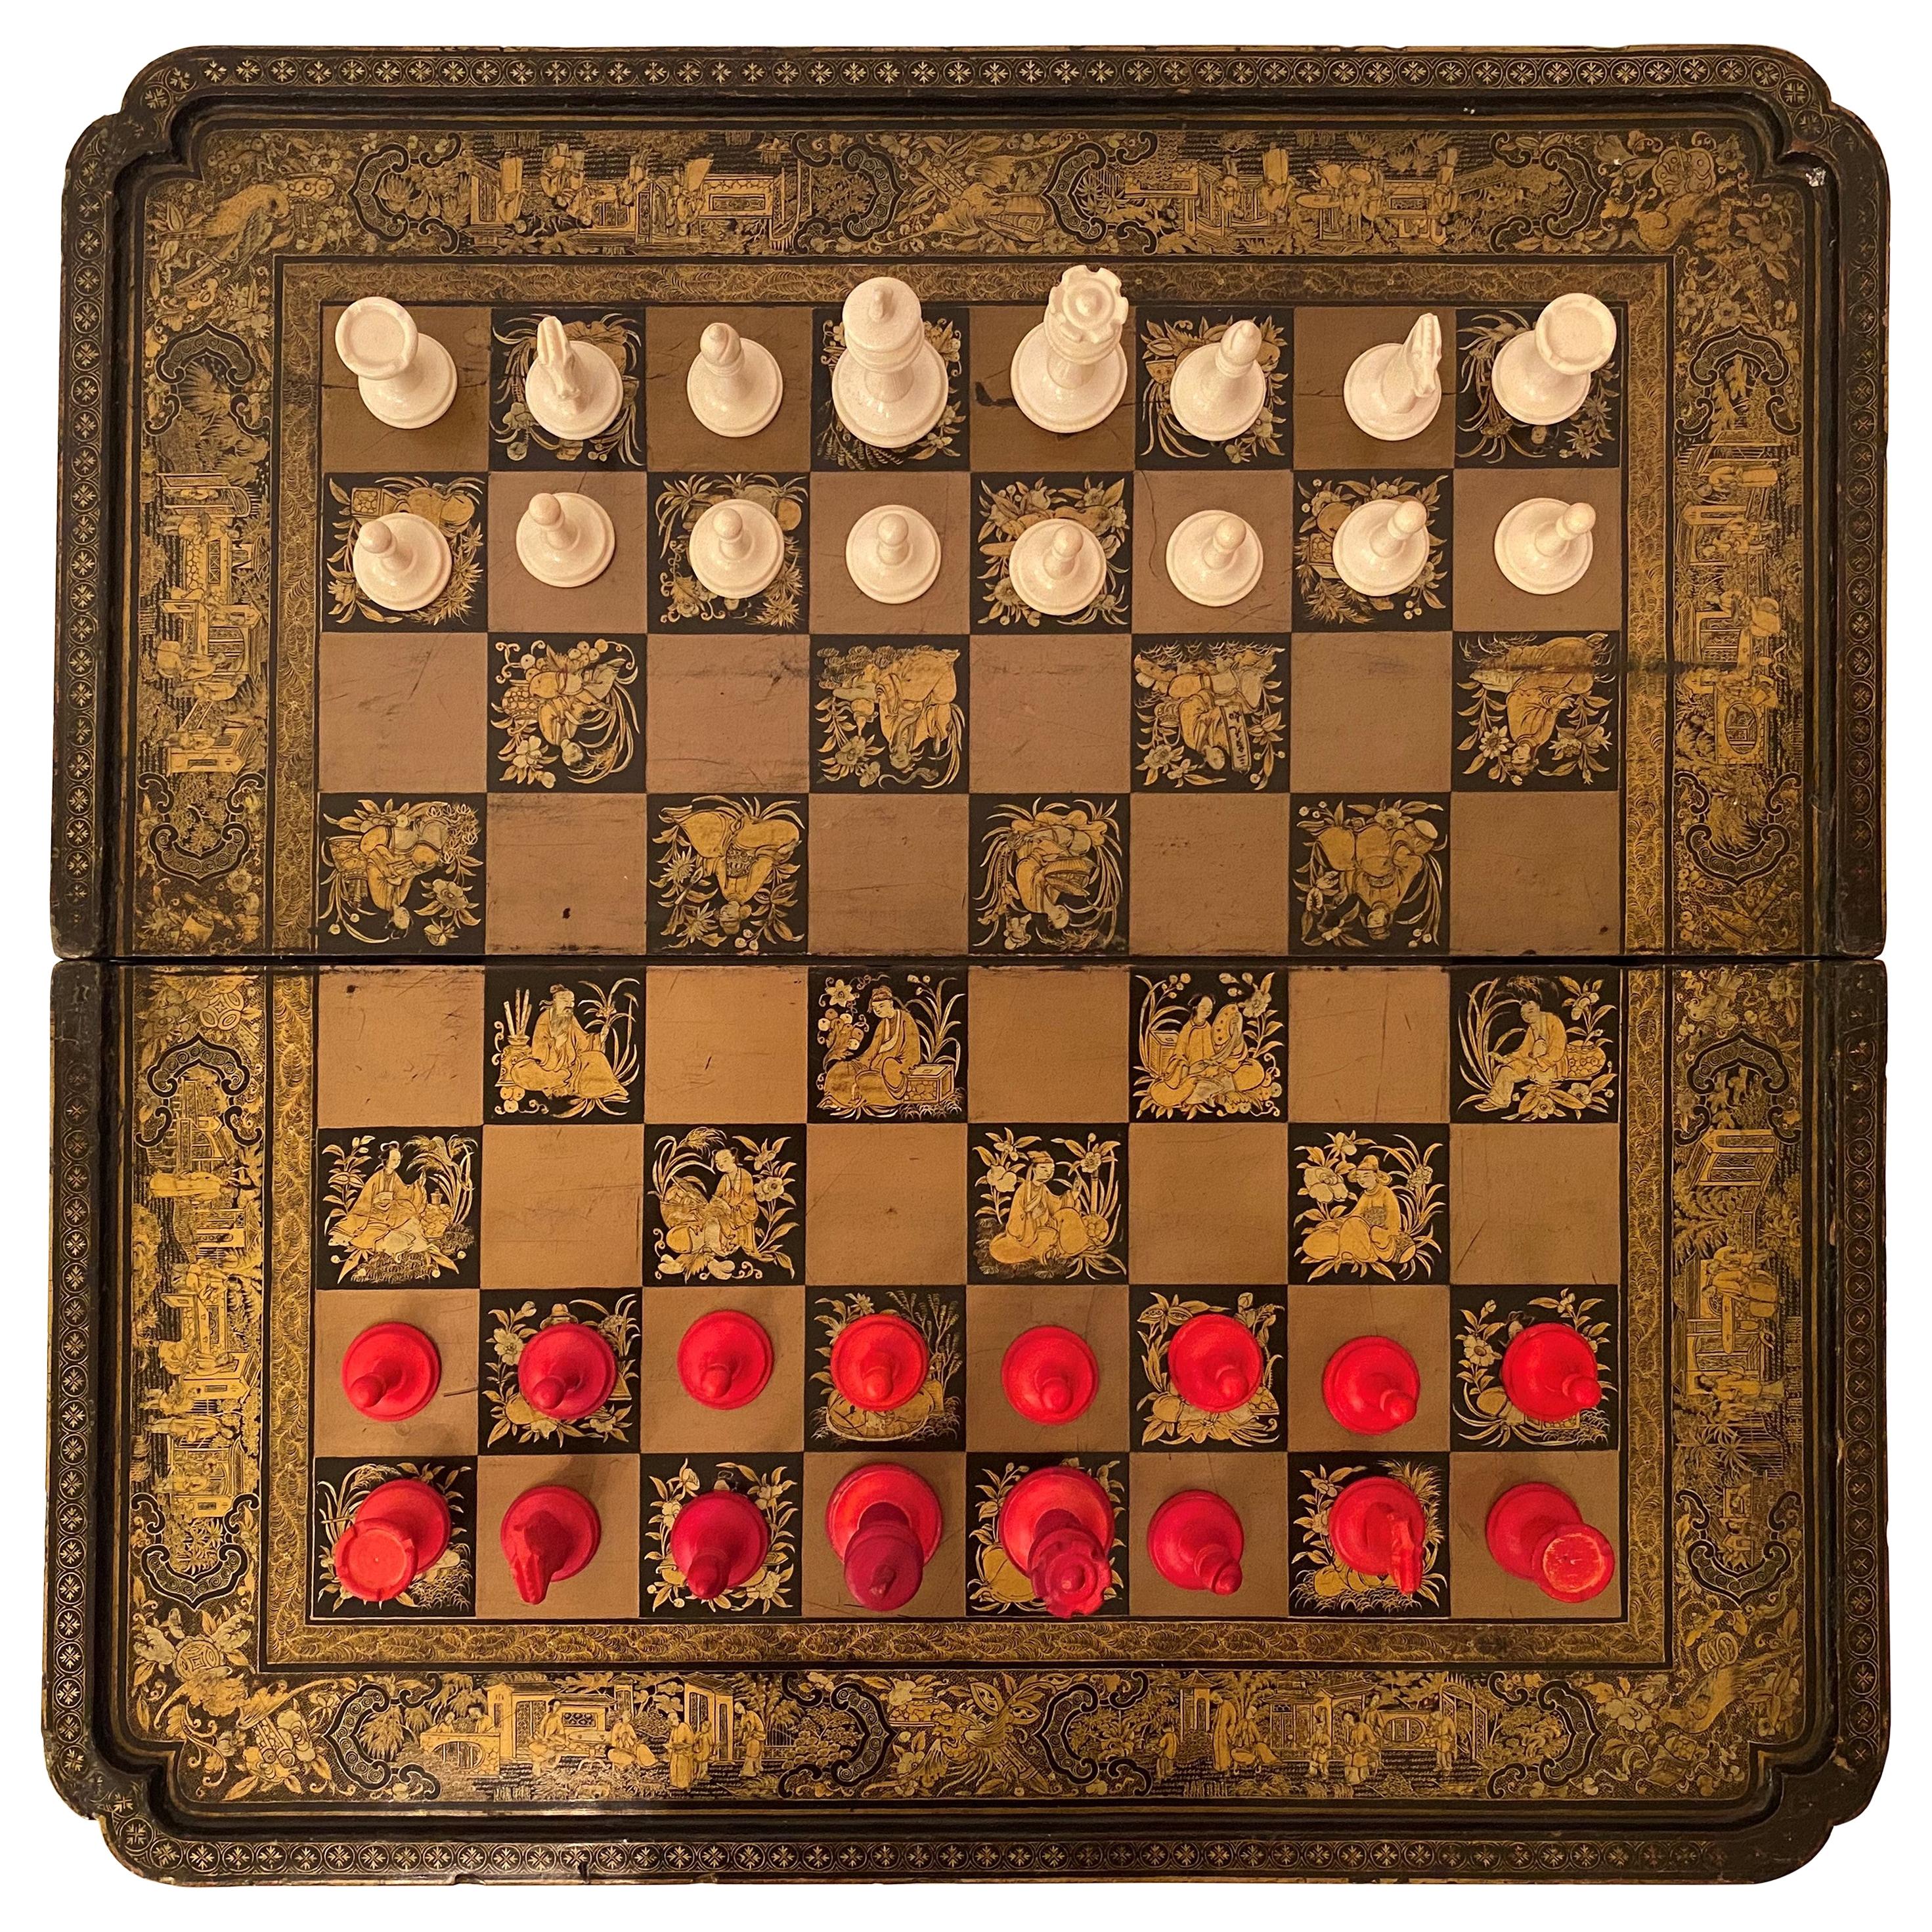 Plateau d'échecs et de backgammon en laque d'exportation chinoise du début du 19e siècle